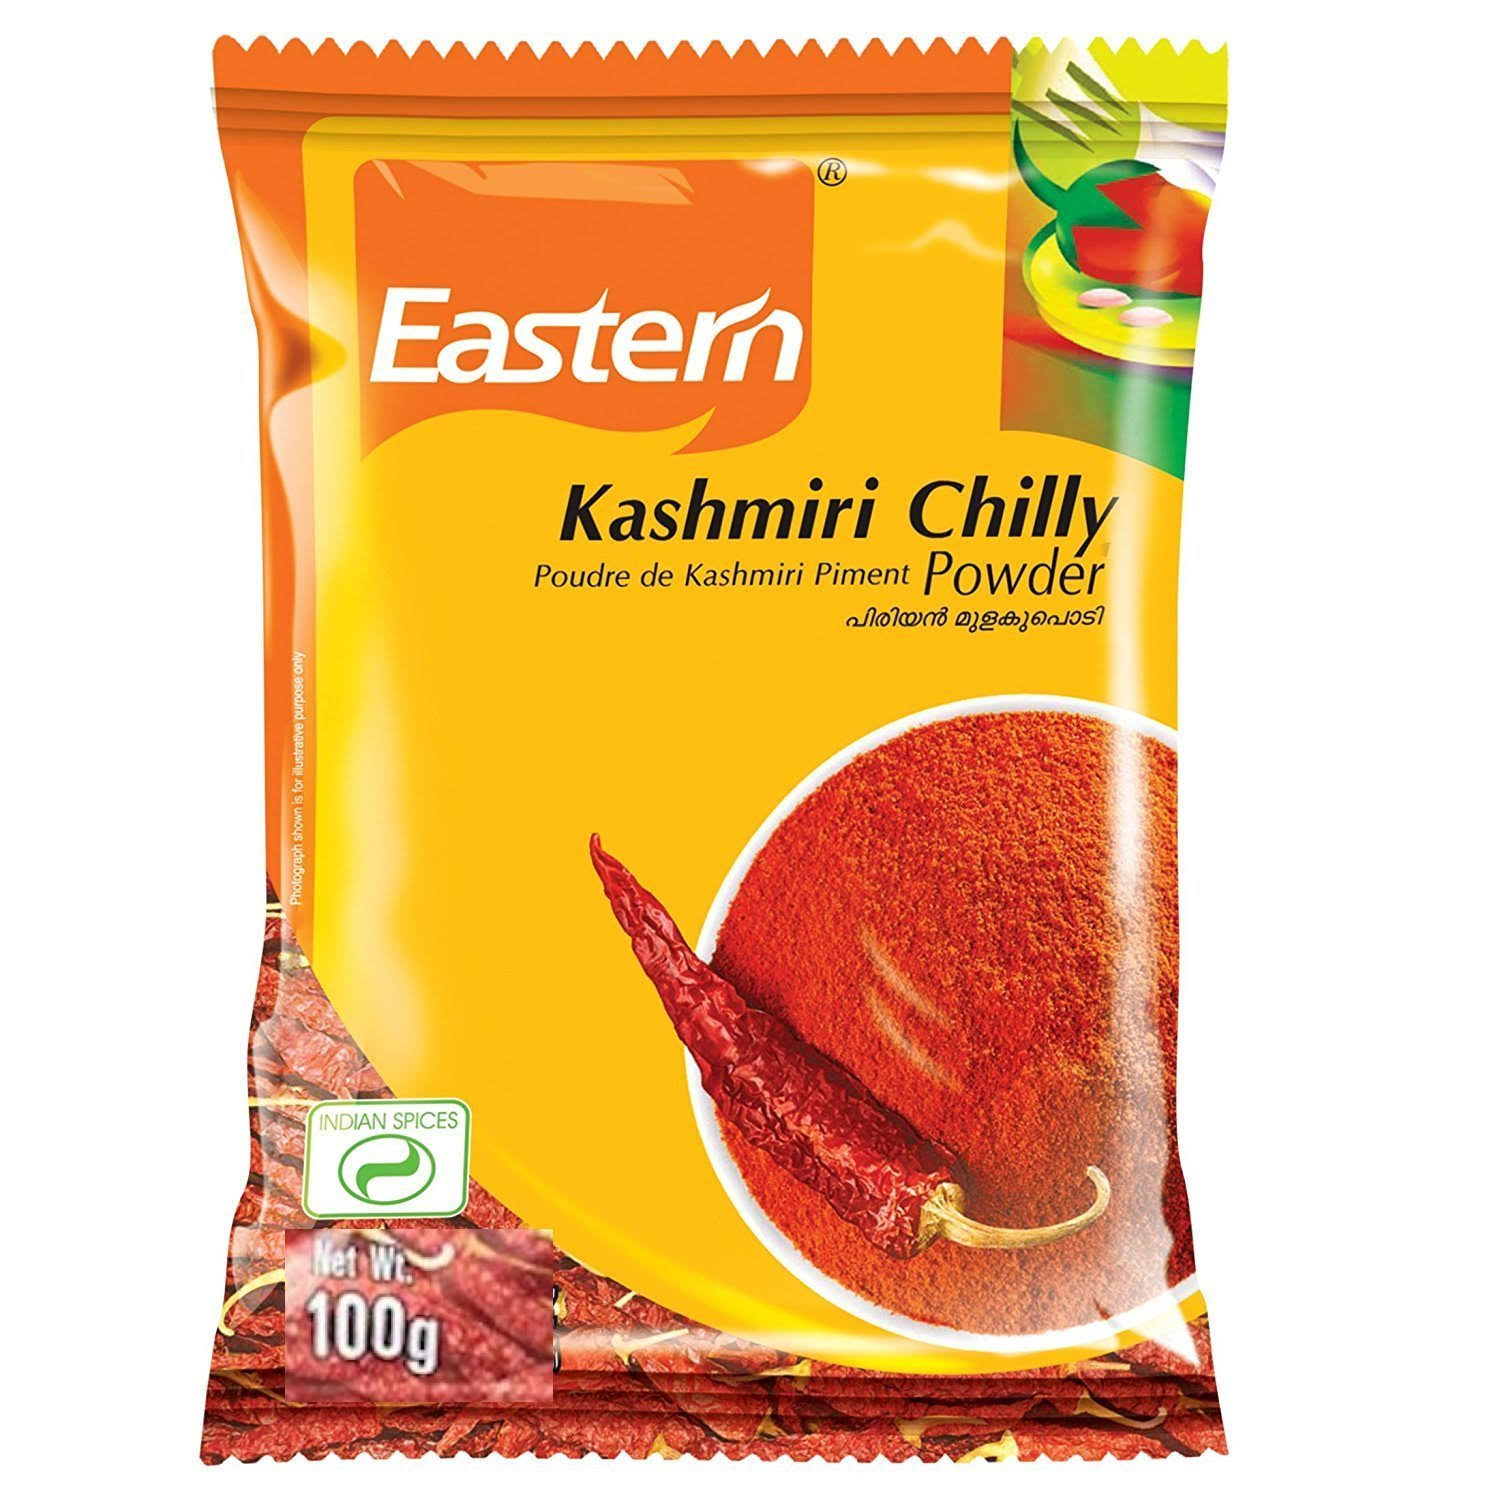 Eastern Kashmiri Chilly Powder 400g